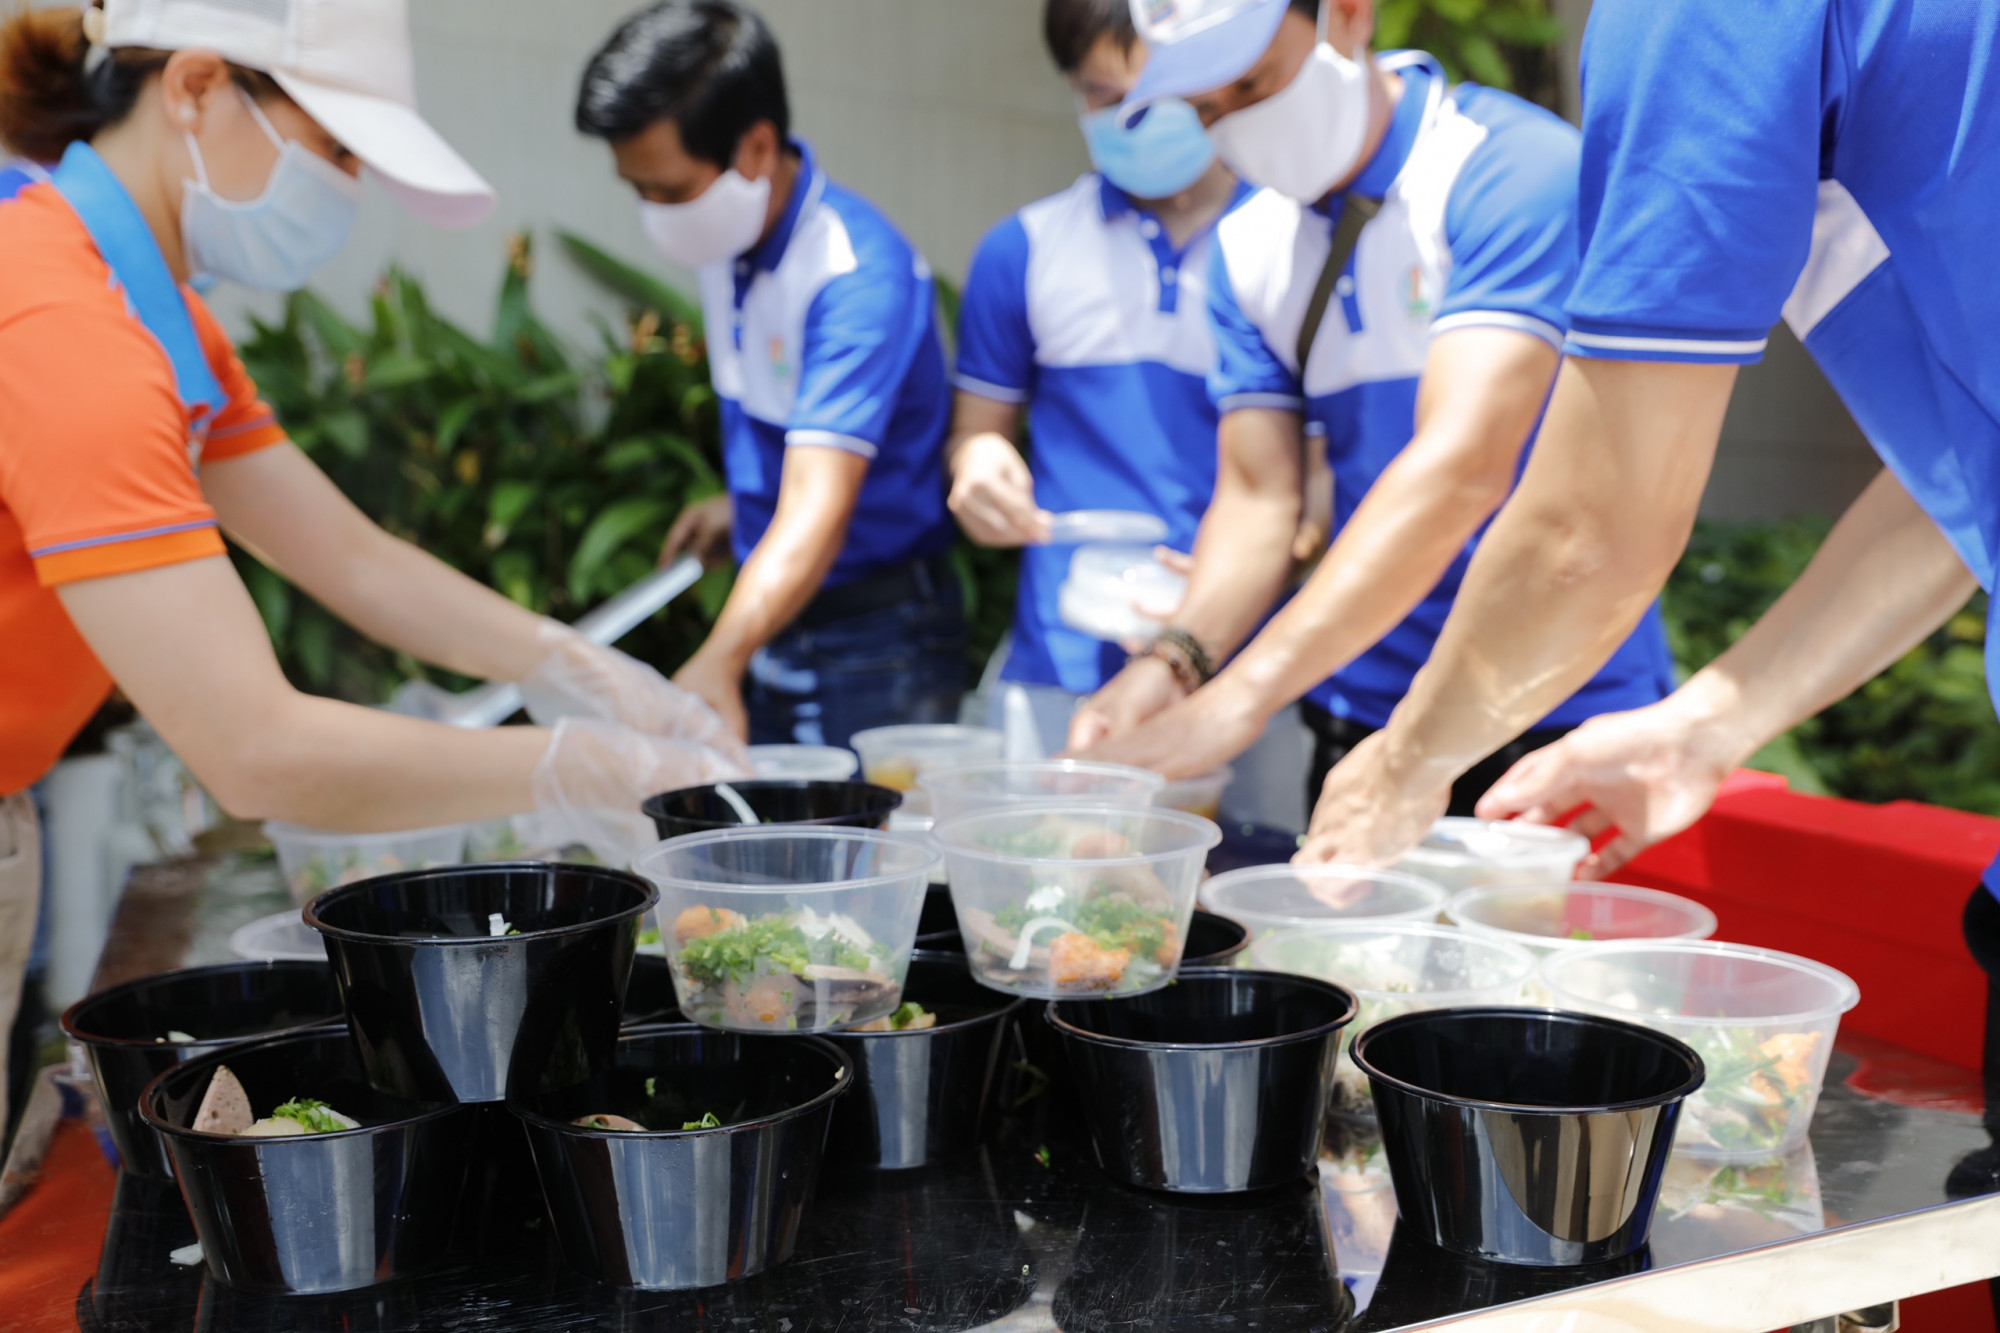 Các tình nguyện viên thuộc Kim Oanh Group không ngại vất vả tham gia tích cực công việc chế biến, phục vụ bữa ăn ngon, đủ chất gửi đến các bệnh viện tuyến đầu - Ảnh: Kim Oanh Group